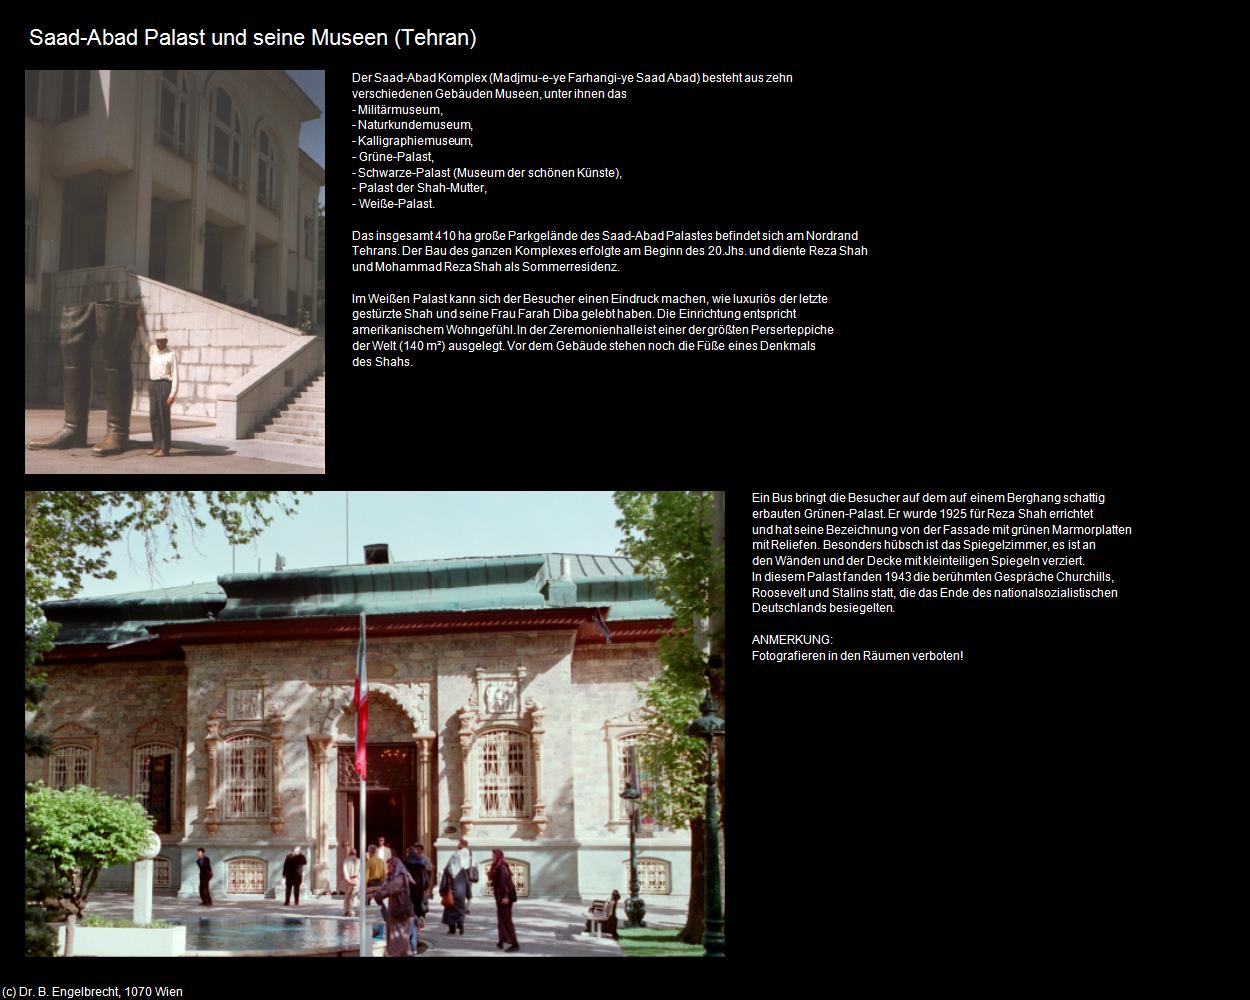 Saad-Abad Palast und seine Museen (Tehran) in Iran